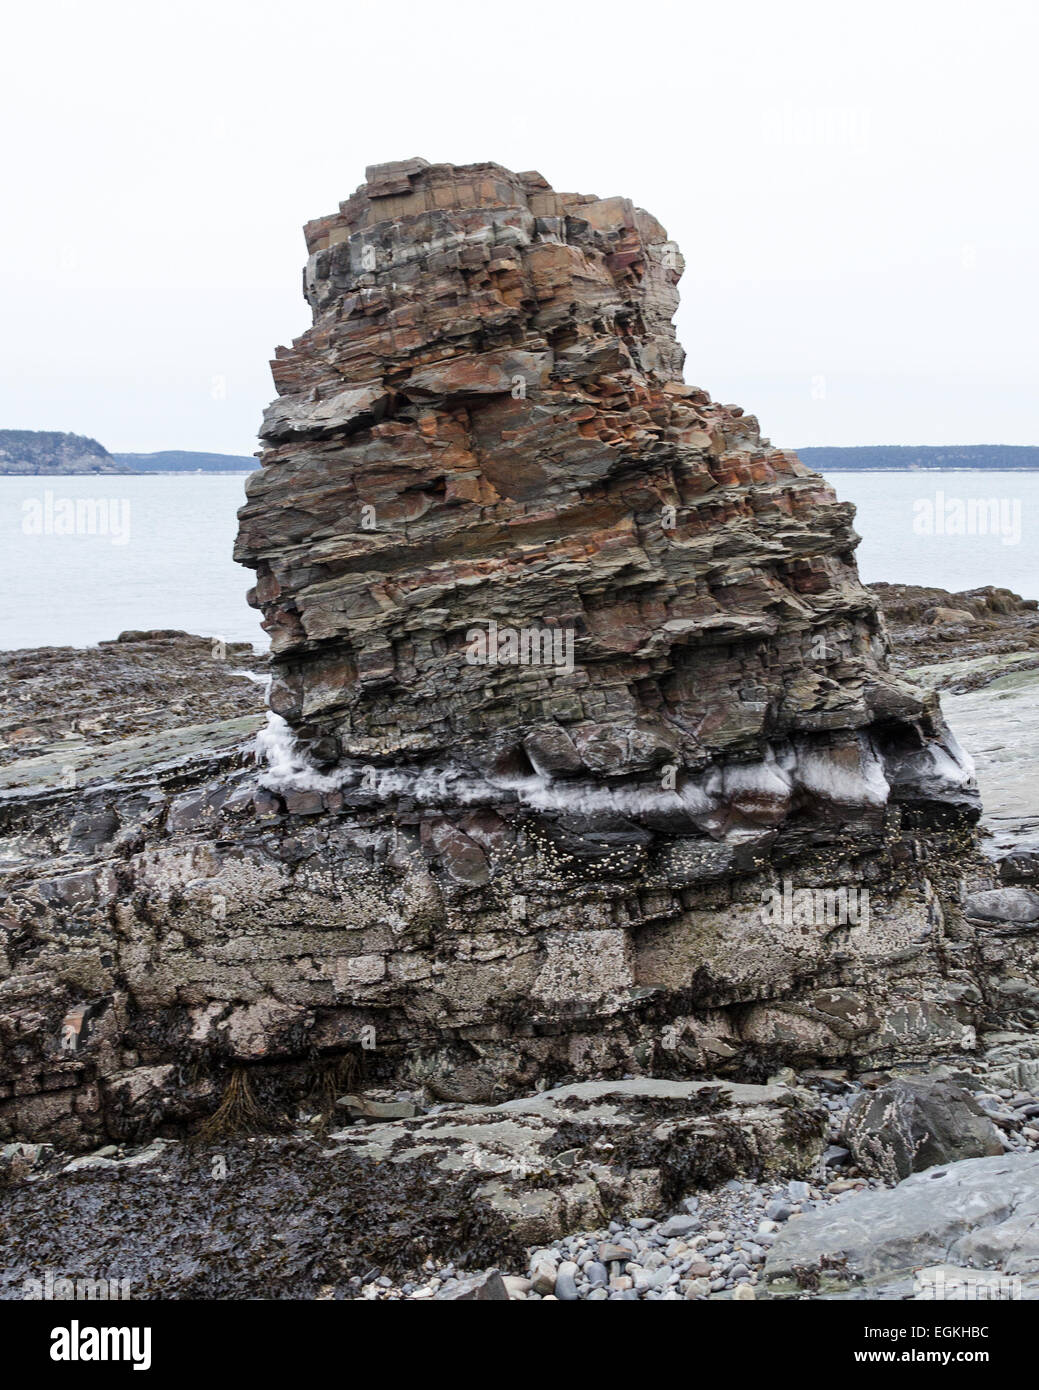 Ein Meer-Stapel gebildet aus erodierten Bar Harbor Bildung Stein ist mit Eis an der Flut umringt. Ufer Weg, Bar Harbor, Maine. Stockfoto